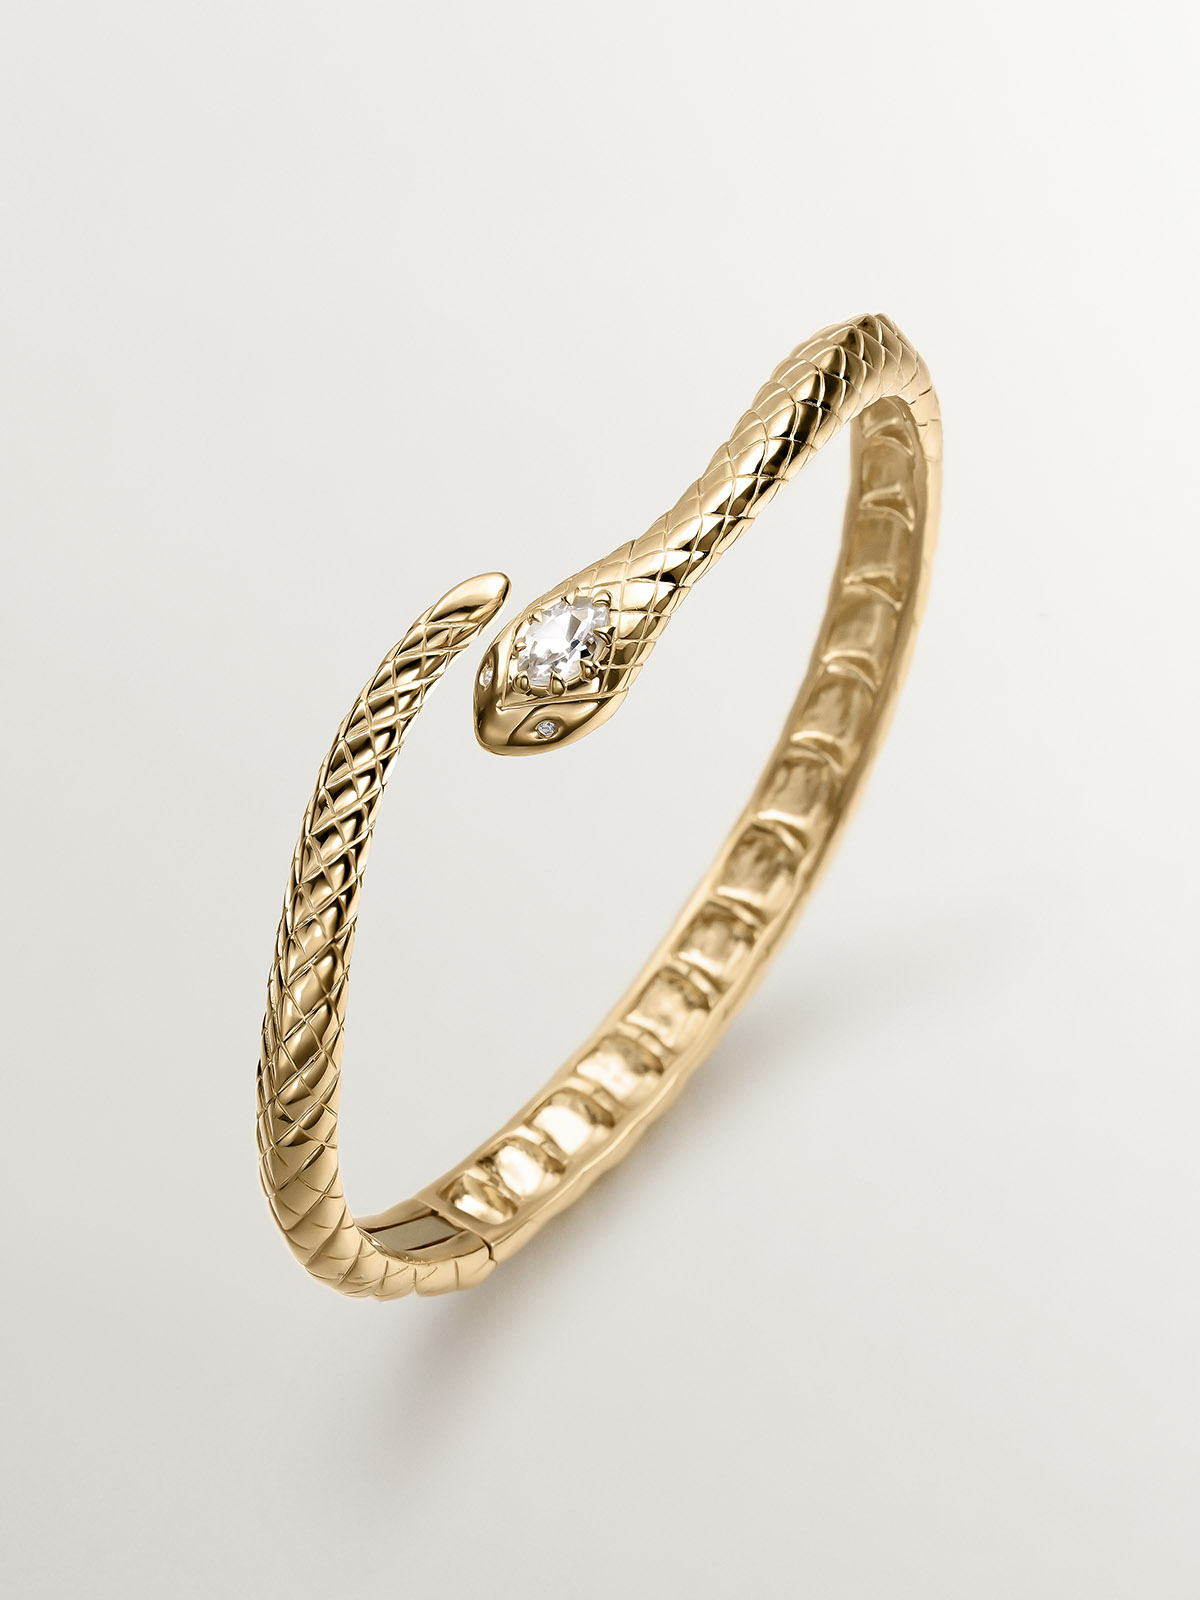 Bracelet en argent 925 plaqué en or jaune 18K en forme de serpent, avec topazes et saphirs blancs.